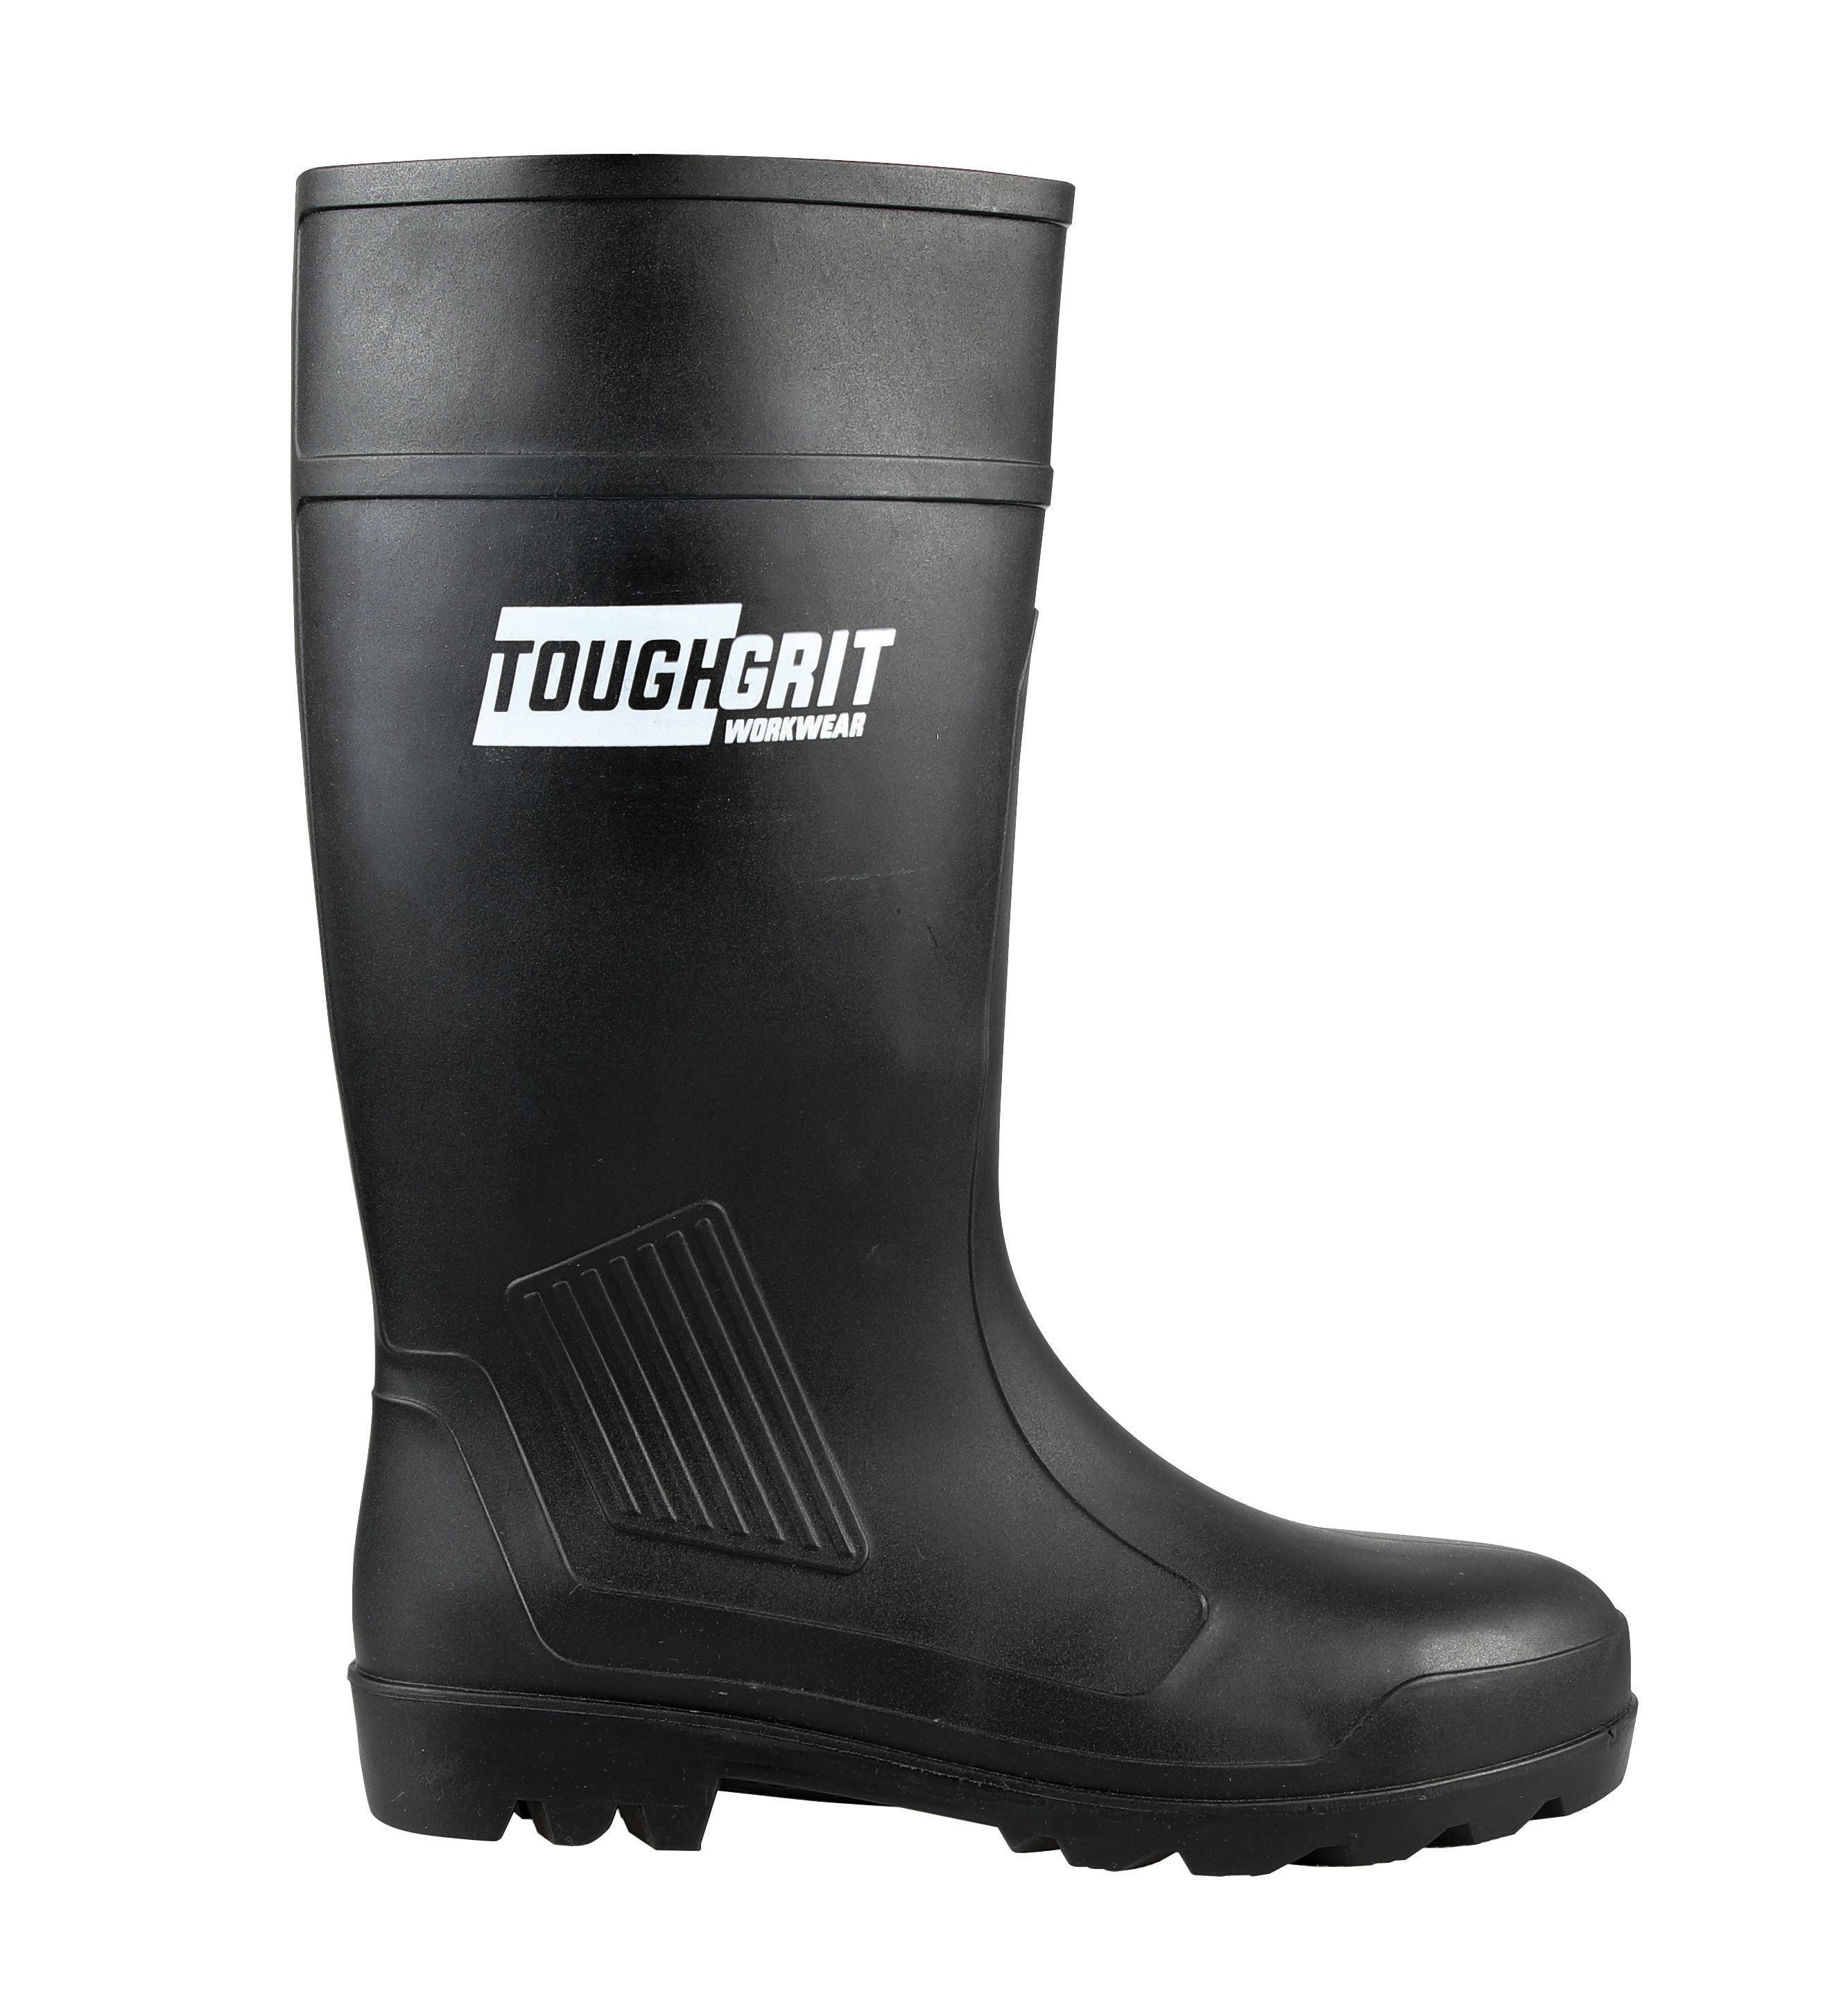 Tough Grit Larch Safety Wellington Boot - Black Size 11